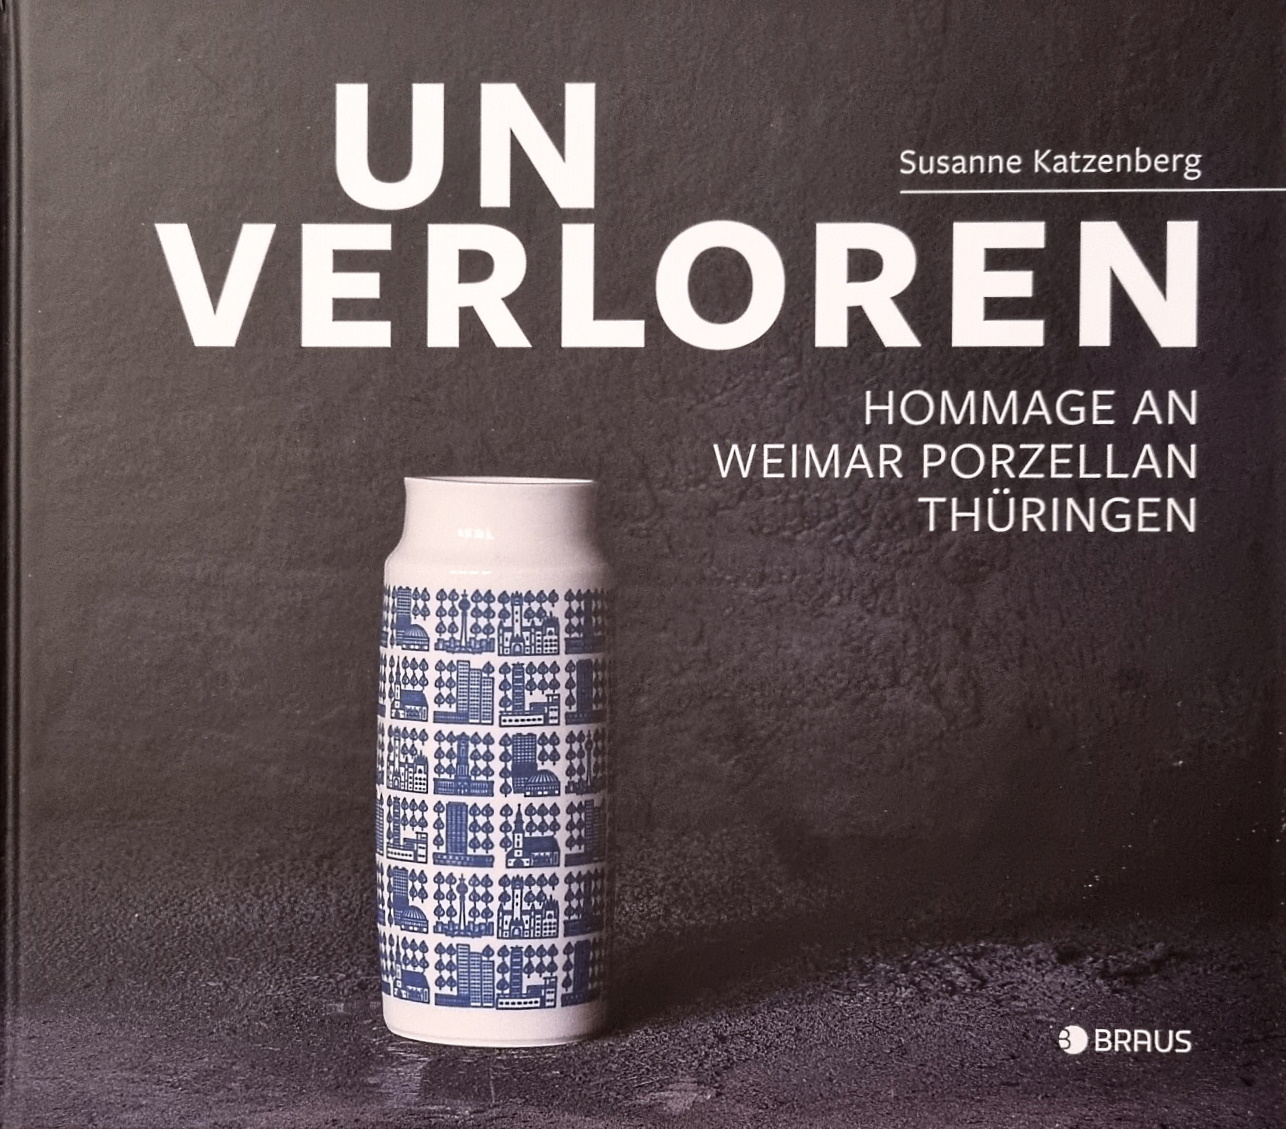 Manufakturen-Blog: Buch-Cover "Susanne Katzenberg: unverloren - Hommage an Weimar Porzellan Thüringen", Verlag Braus EUR 29,80 (Foto: Wigmar Bressel)